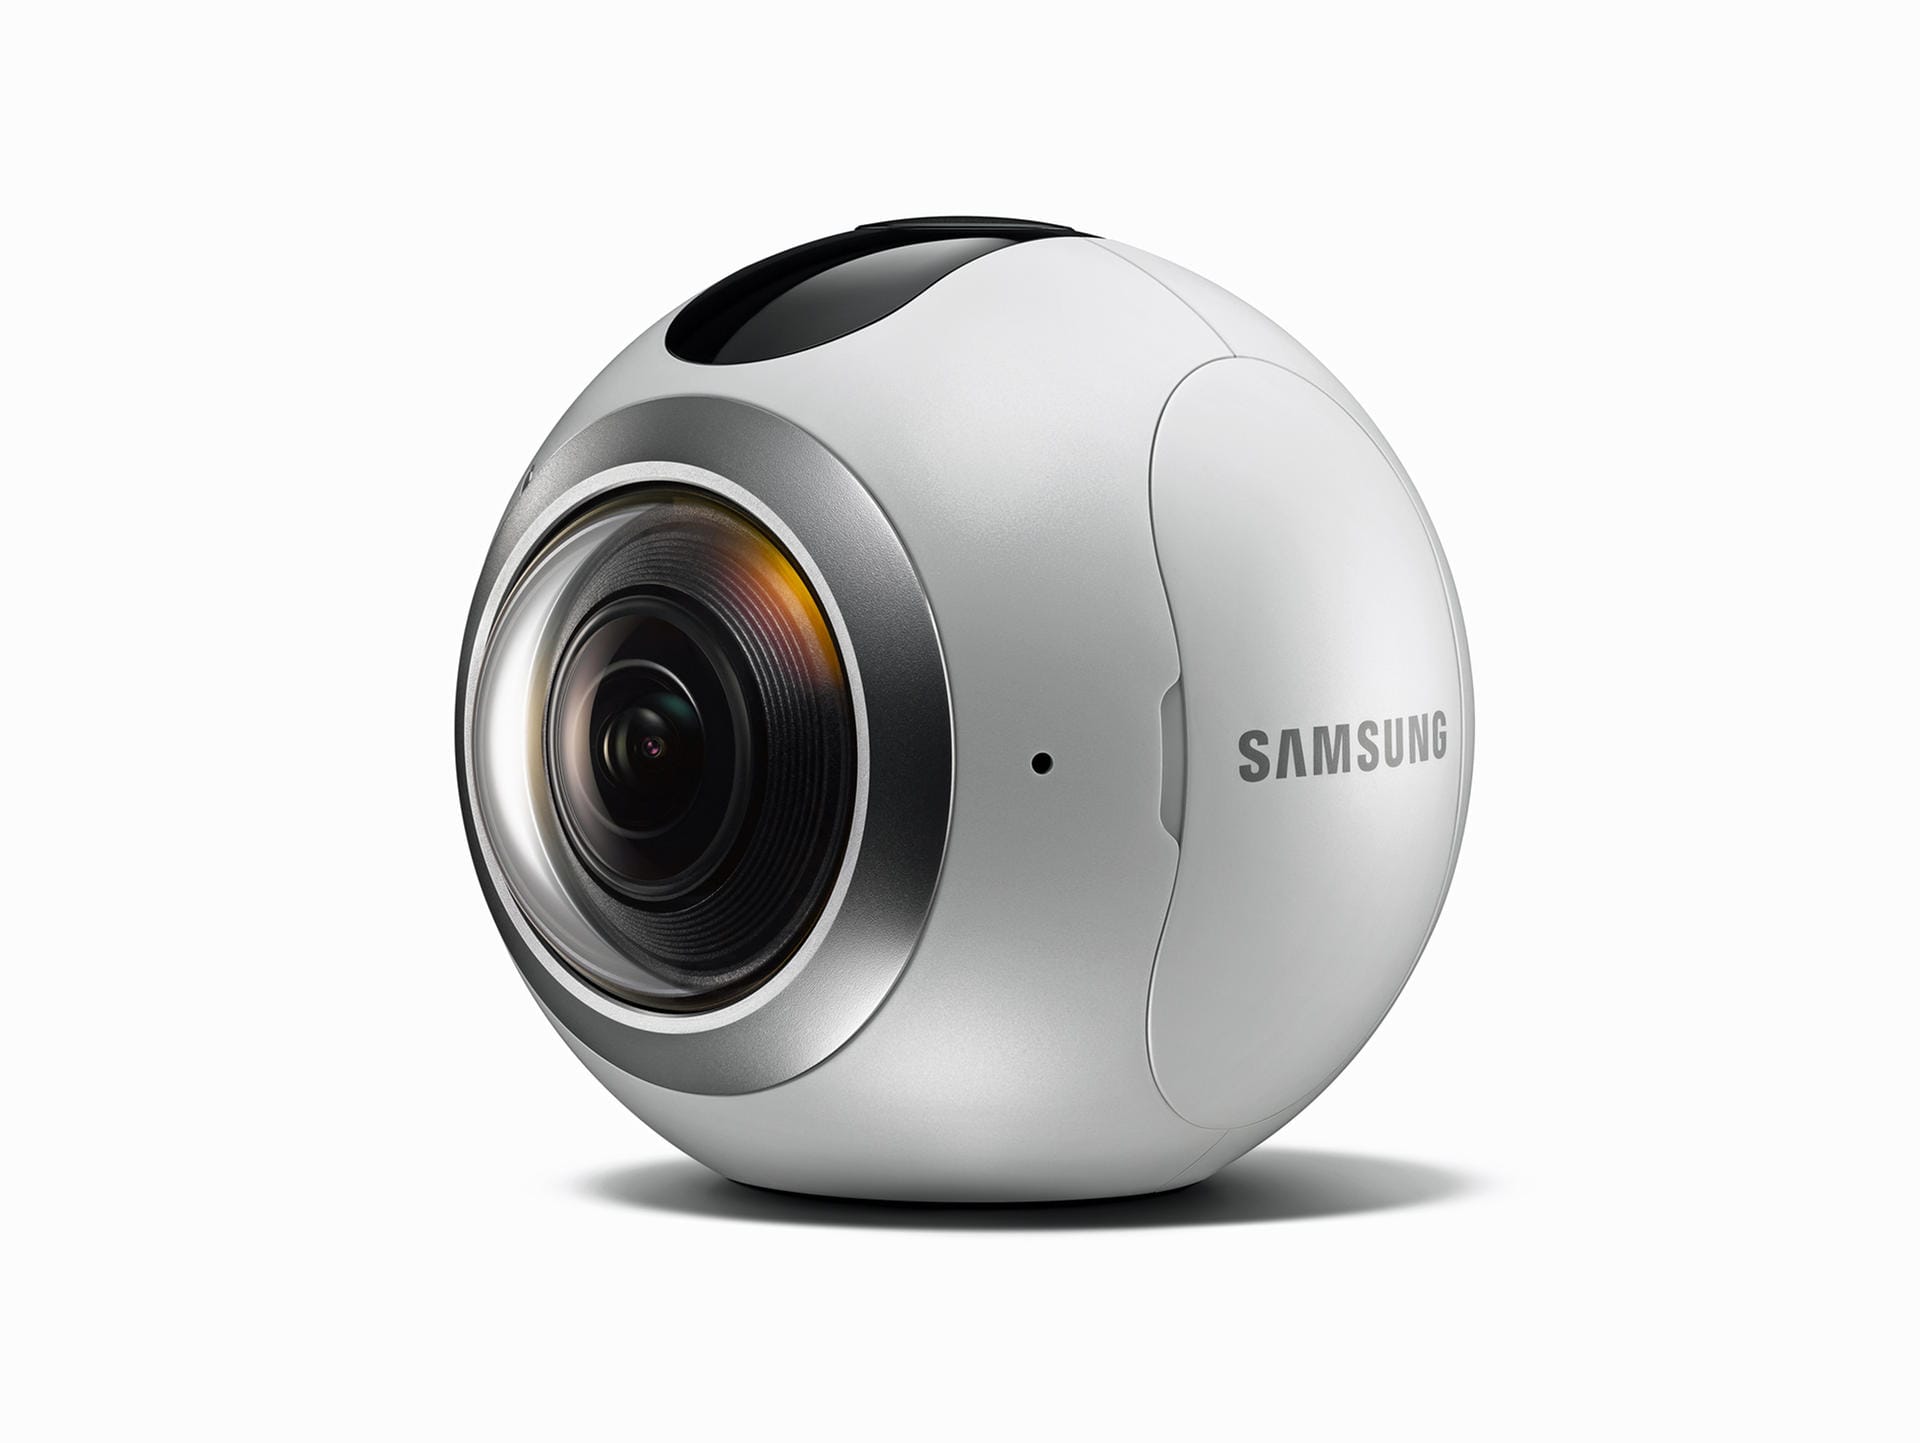 Samsung setzt bei seiner Strategie auch auf Virtuelle Realität und stellte deshalb mit dem Galaxy S7 auch eine spezielle VR-Kamera vor.